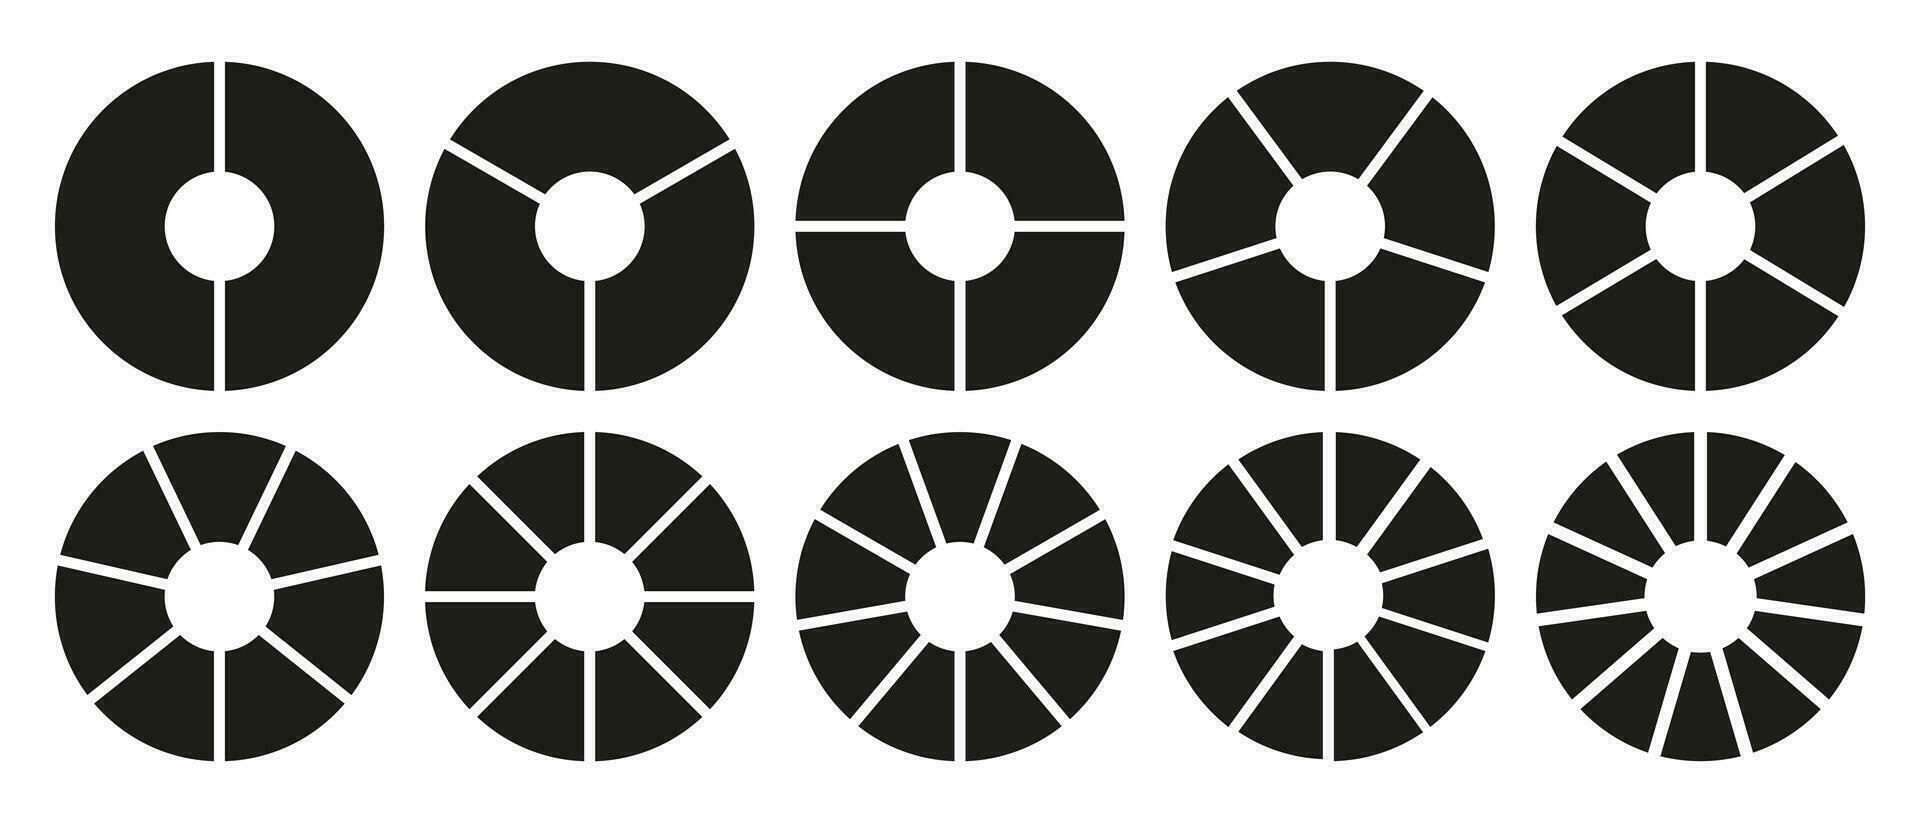 círculo divisão em 2, 3, 4, 5, 6, 7, 8, 9, 10, 11 igual peças. roda volta dividido diagramas com dois, três, quatro, cinco, seis, Sete, oito, nove, dez, onze segmentos. infográfico definir. treinamento em branco. vetor